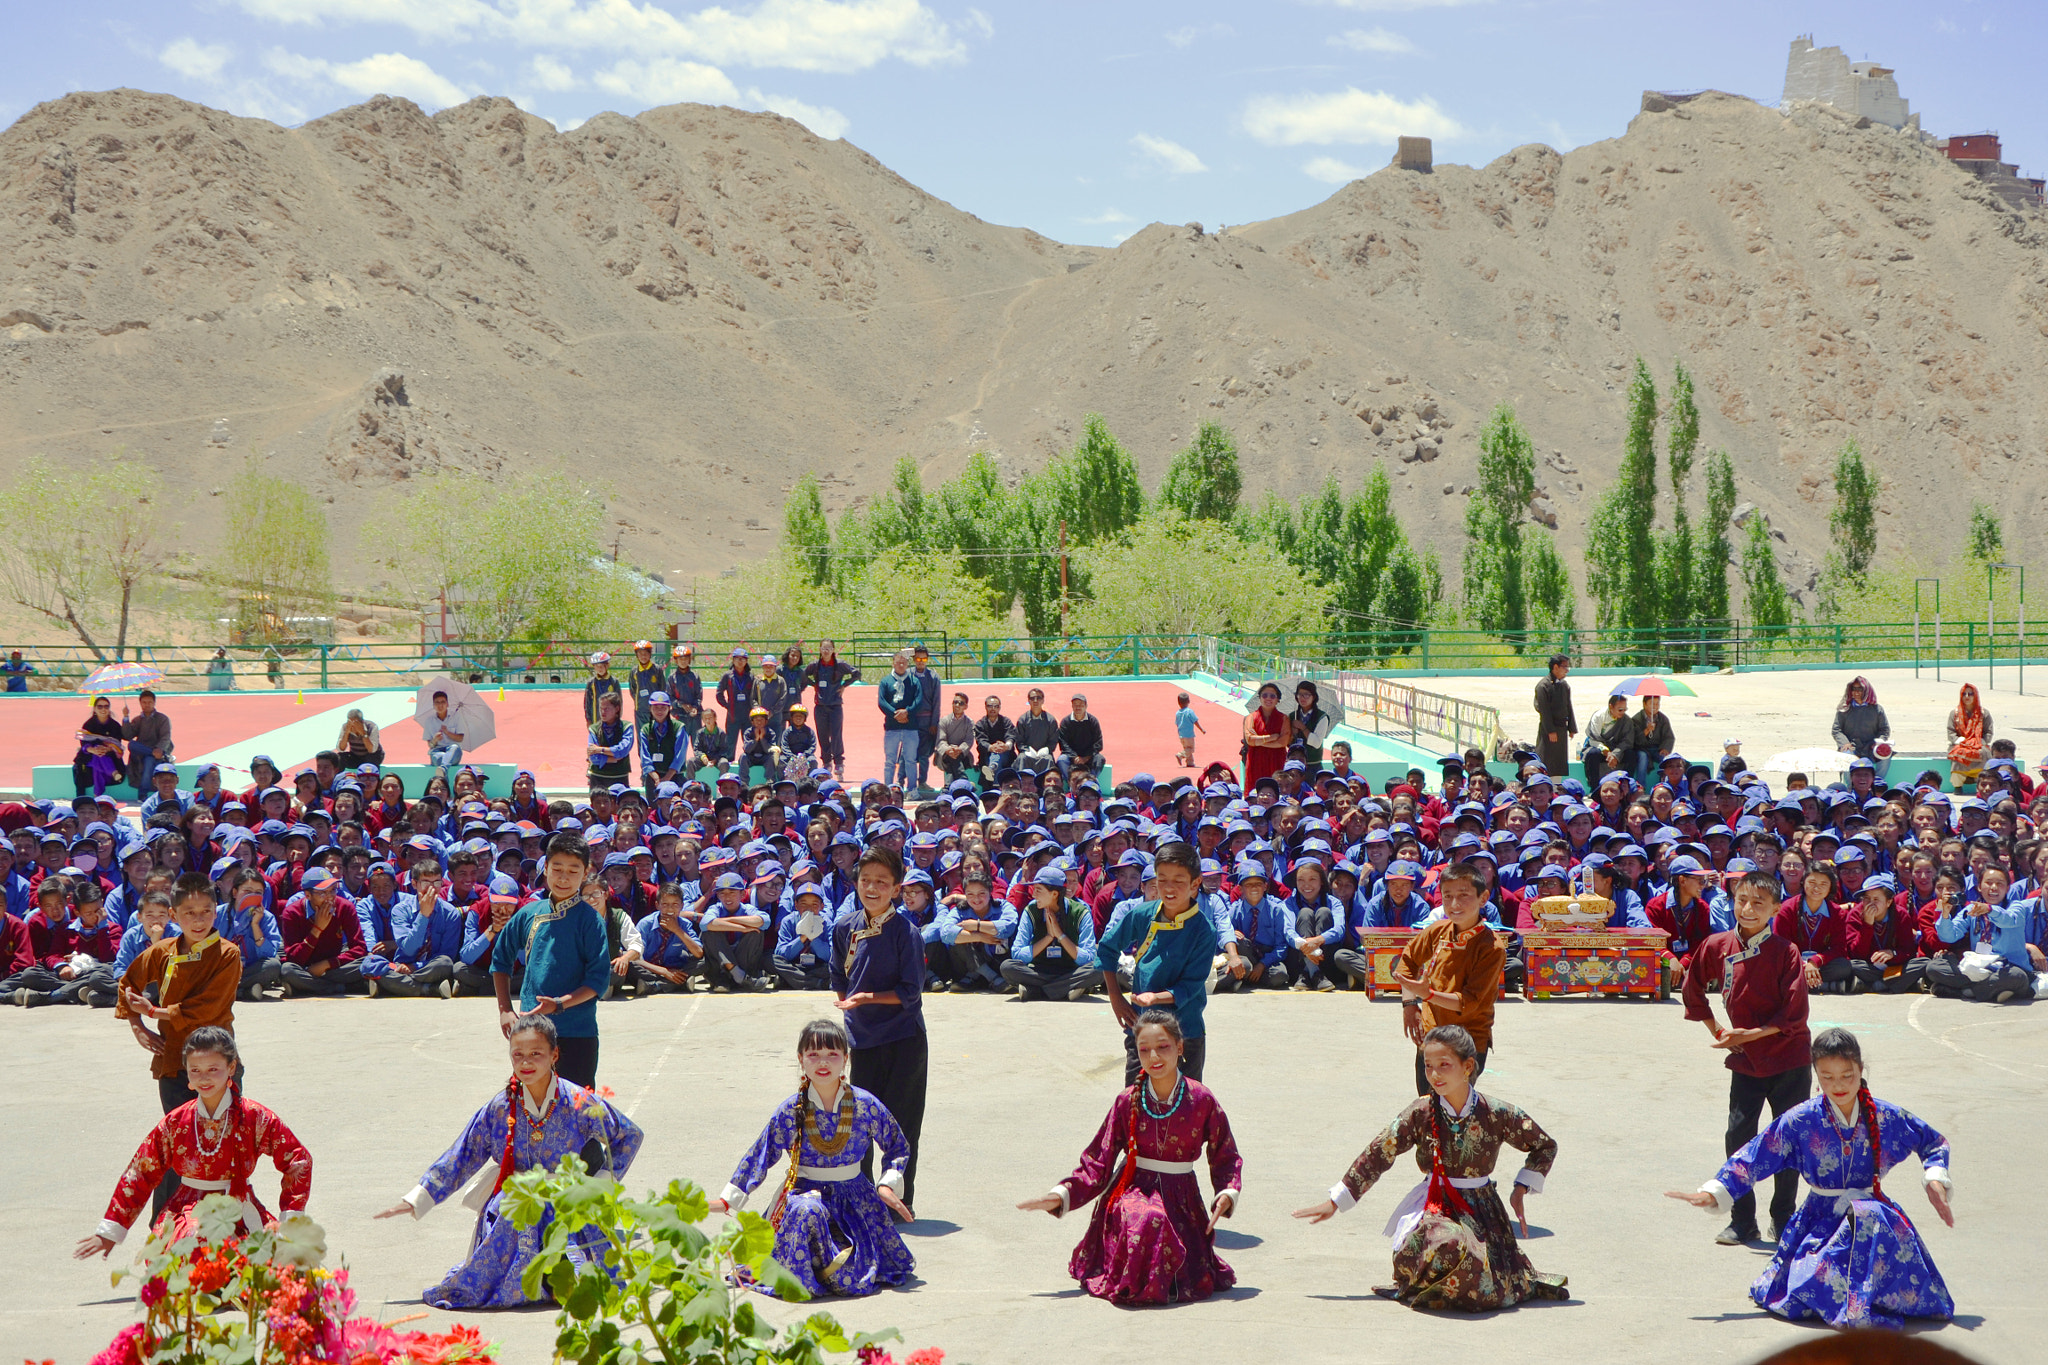 AF Zoom-Nikkor 80-200mm f/4.5-5.6D sample photo. Ladakhi dancers photography